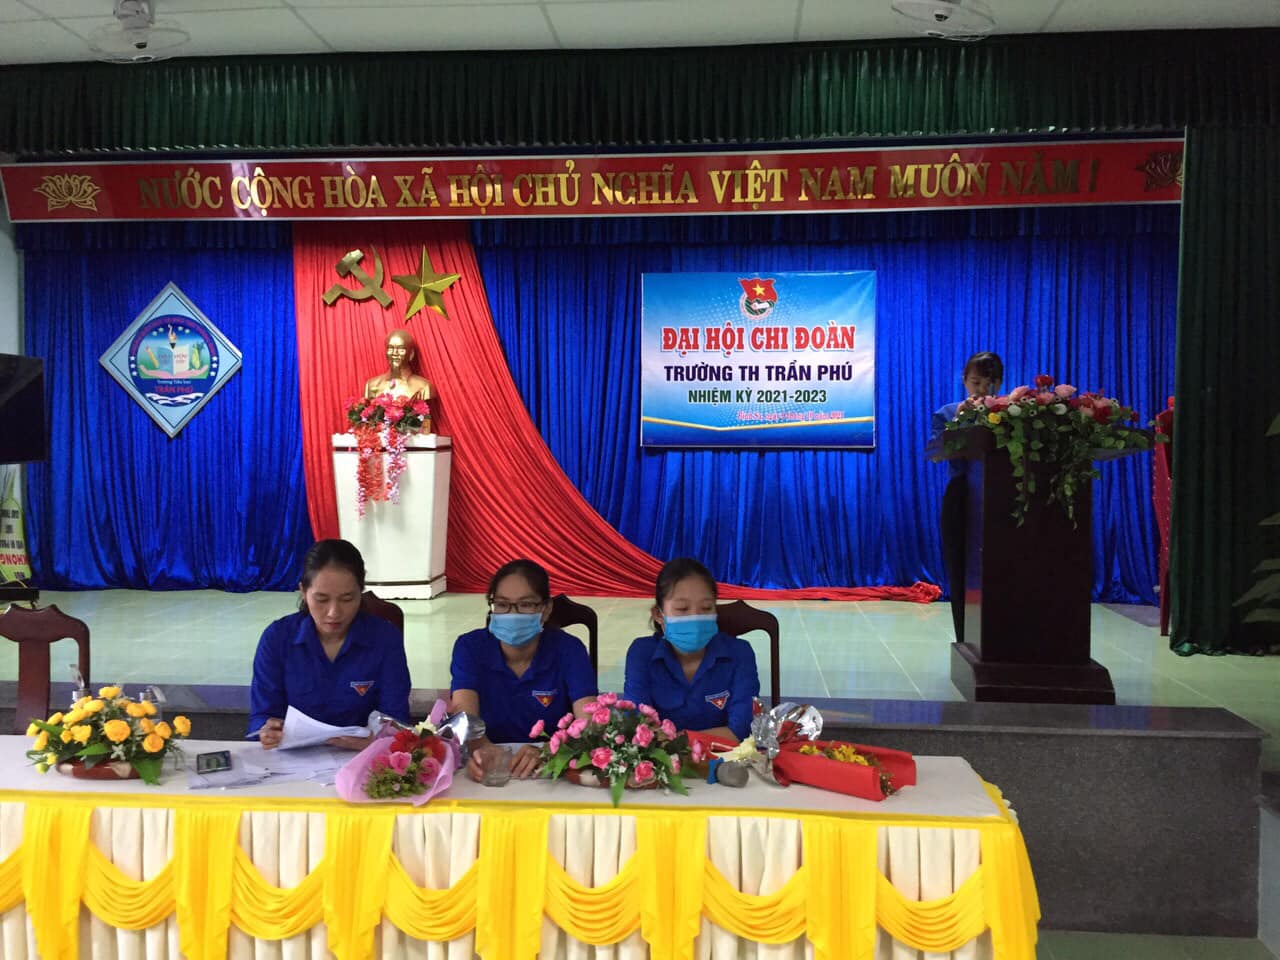 Đại hội Chi đoàn Trường TH Trần Phú nhiệm kỳ 2021-2023